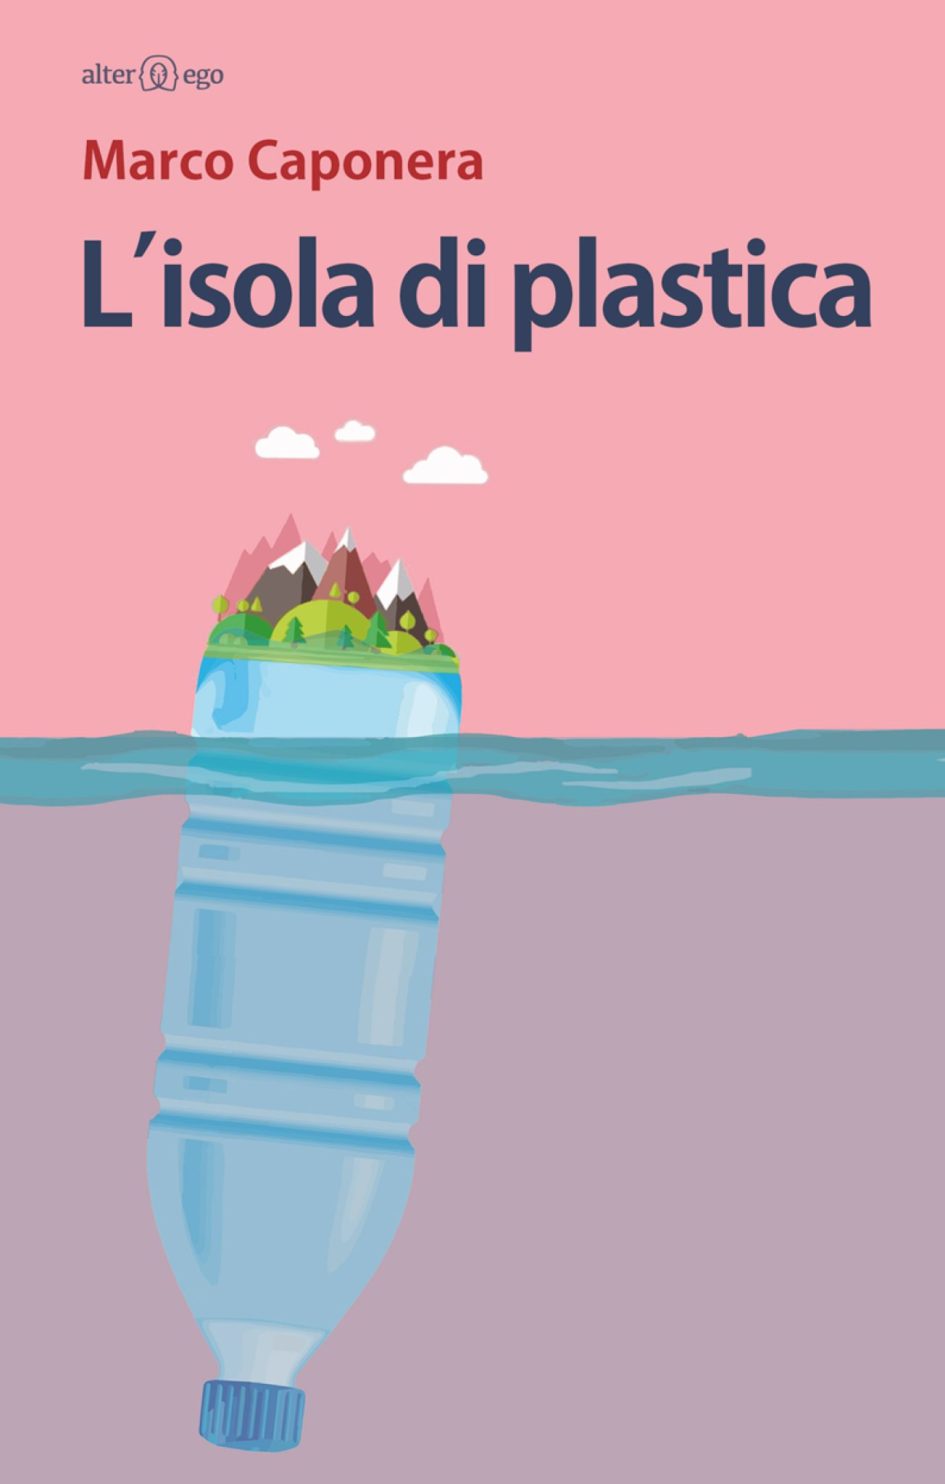 Recensione: “L’isola di plastica” di Marco Caponera